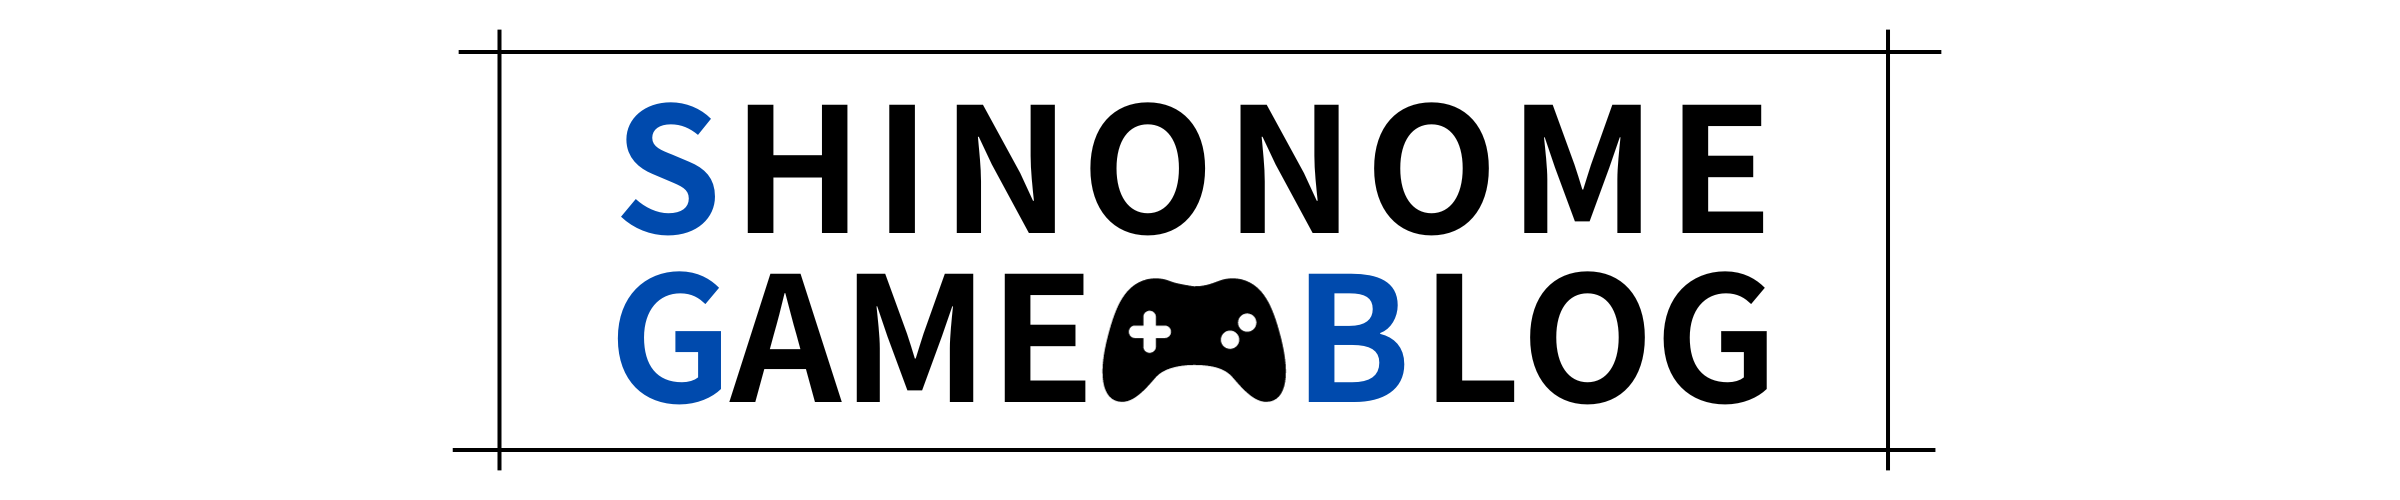 SINONOMEゲームブログのロゴ画像